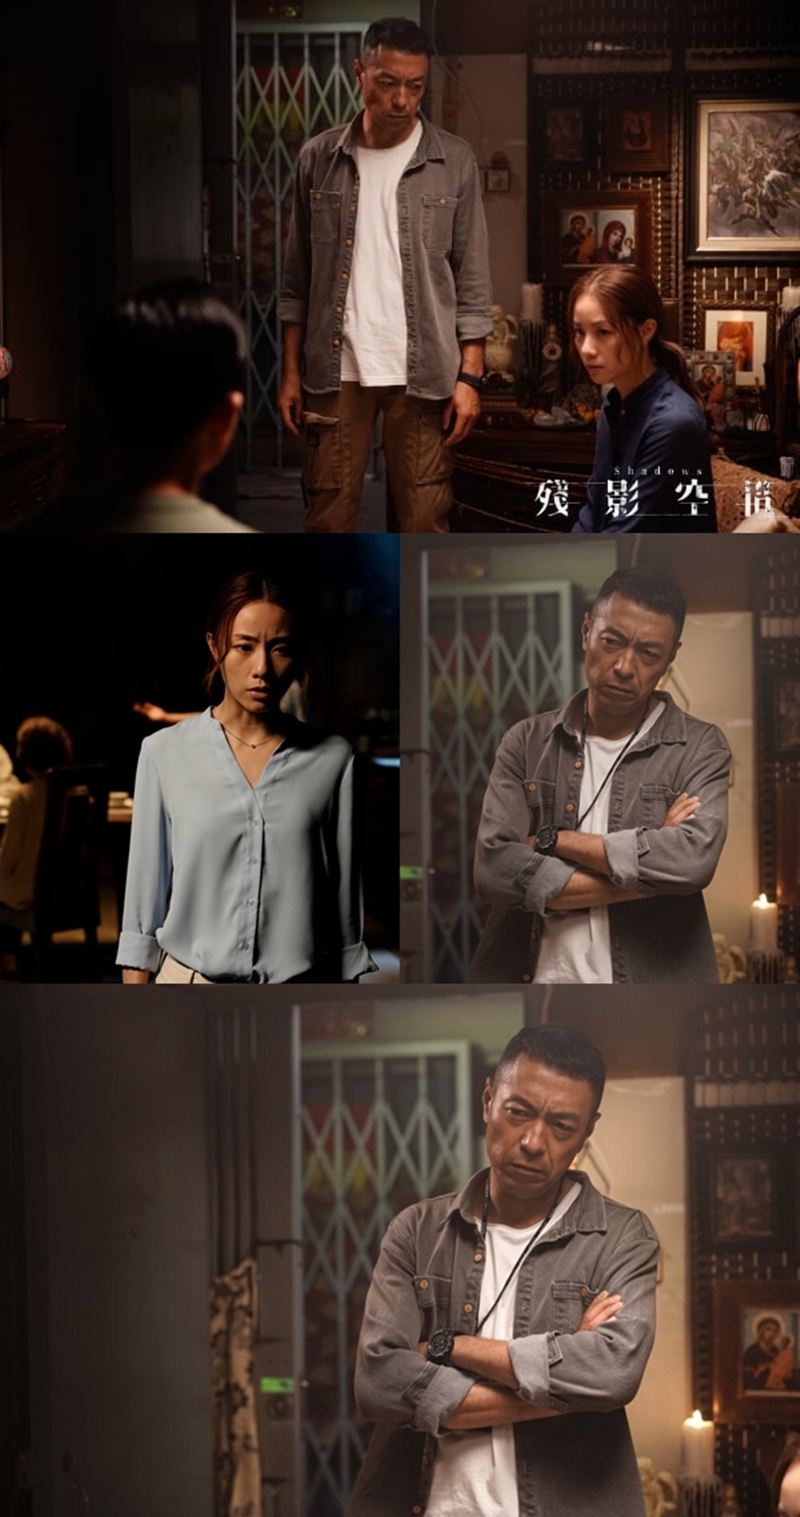 姜皓文主演電影《殘影空間》於2日在全馬上映